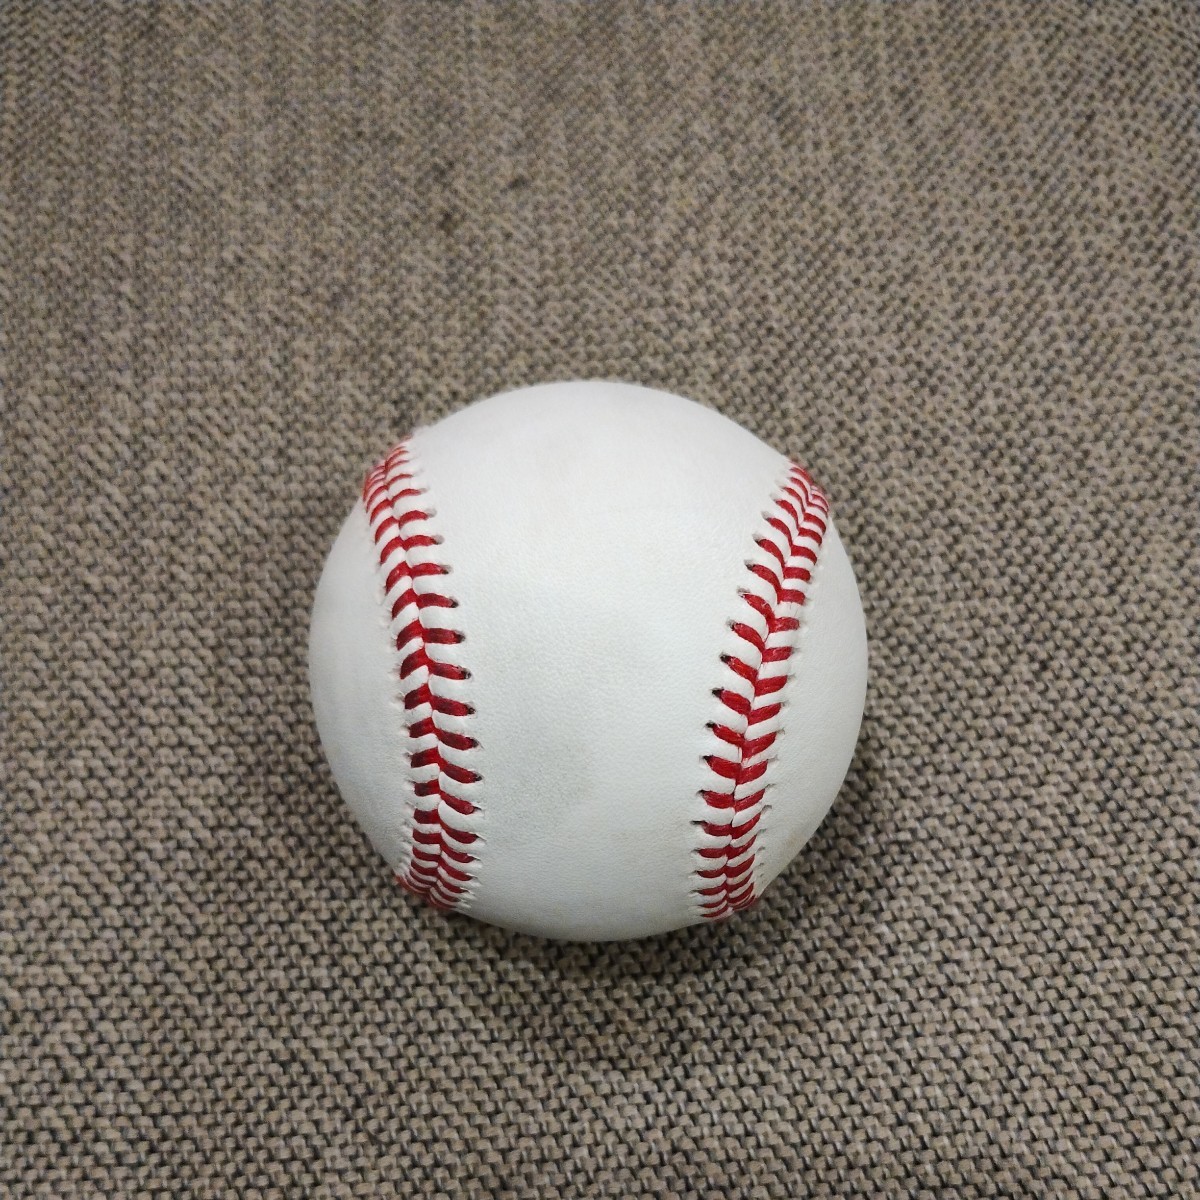 プロ野球 公式試合球 硬式 ランバード 横浜対中日戦使用球_画像3